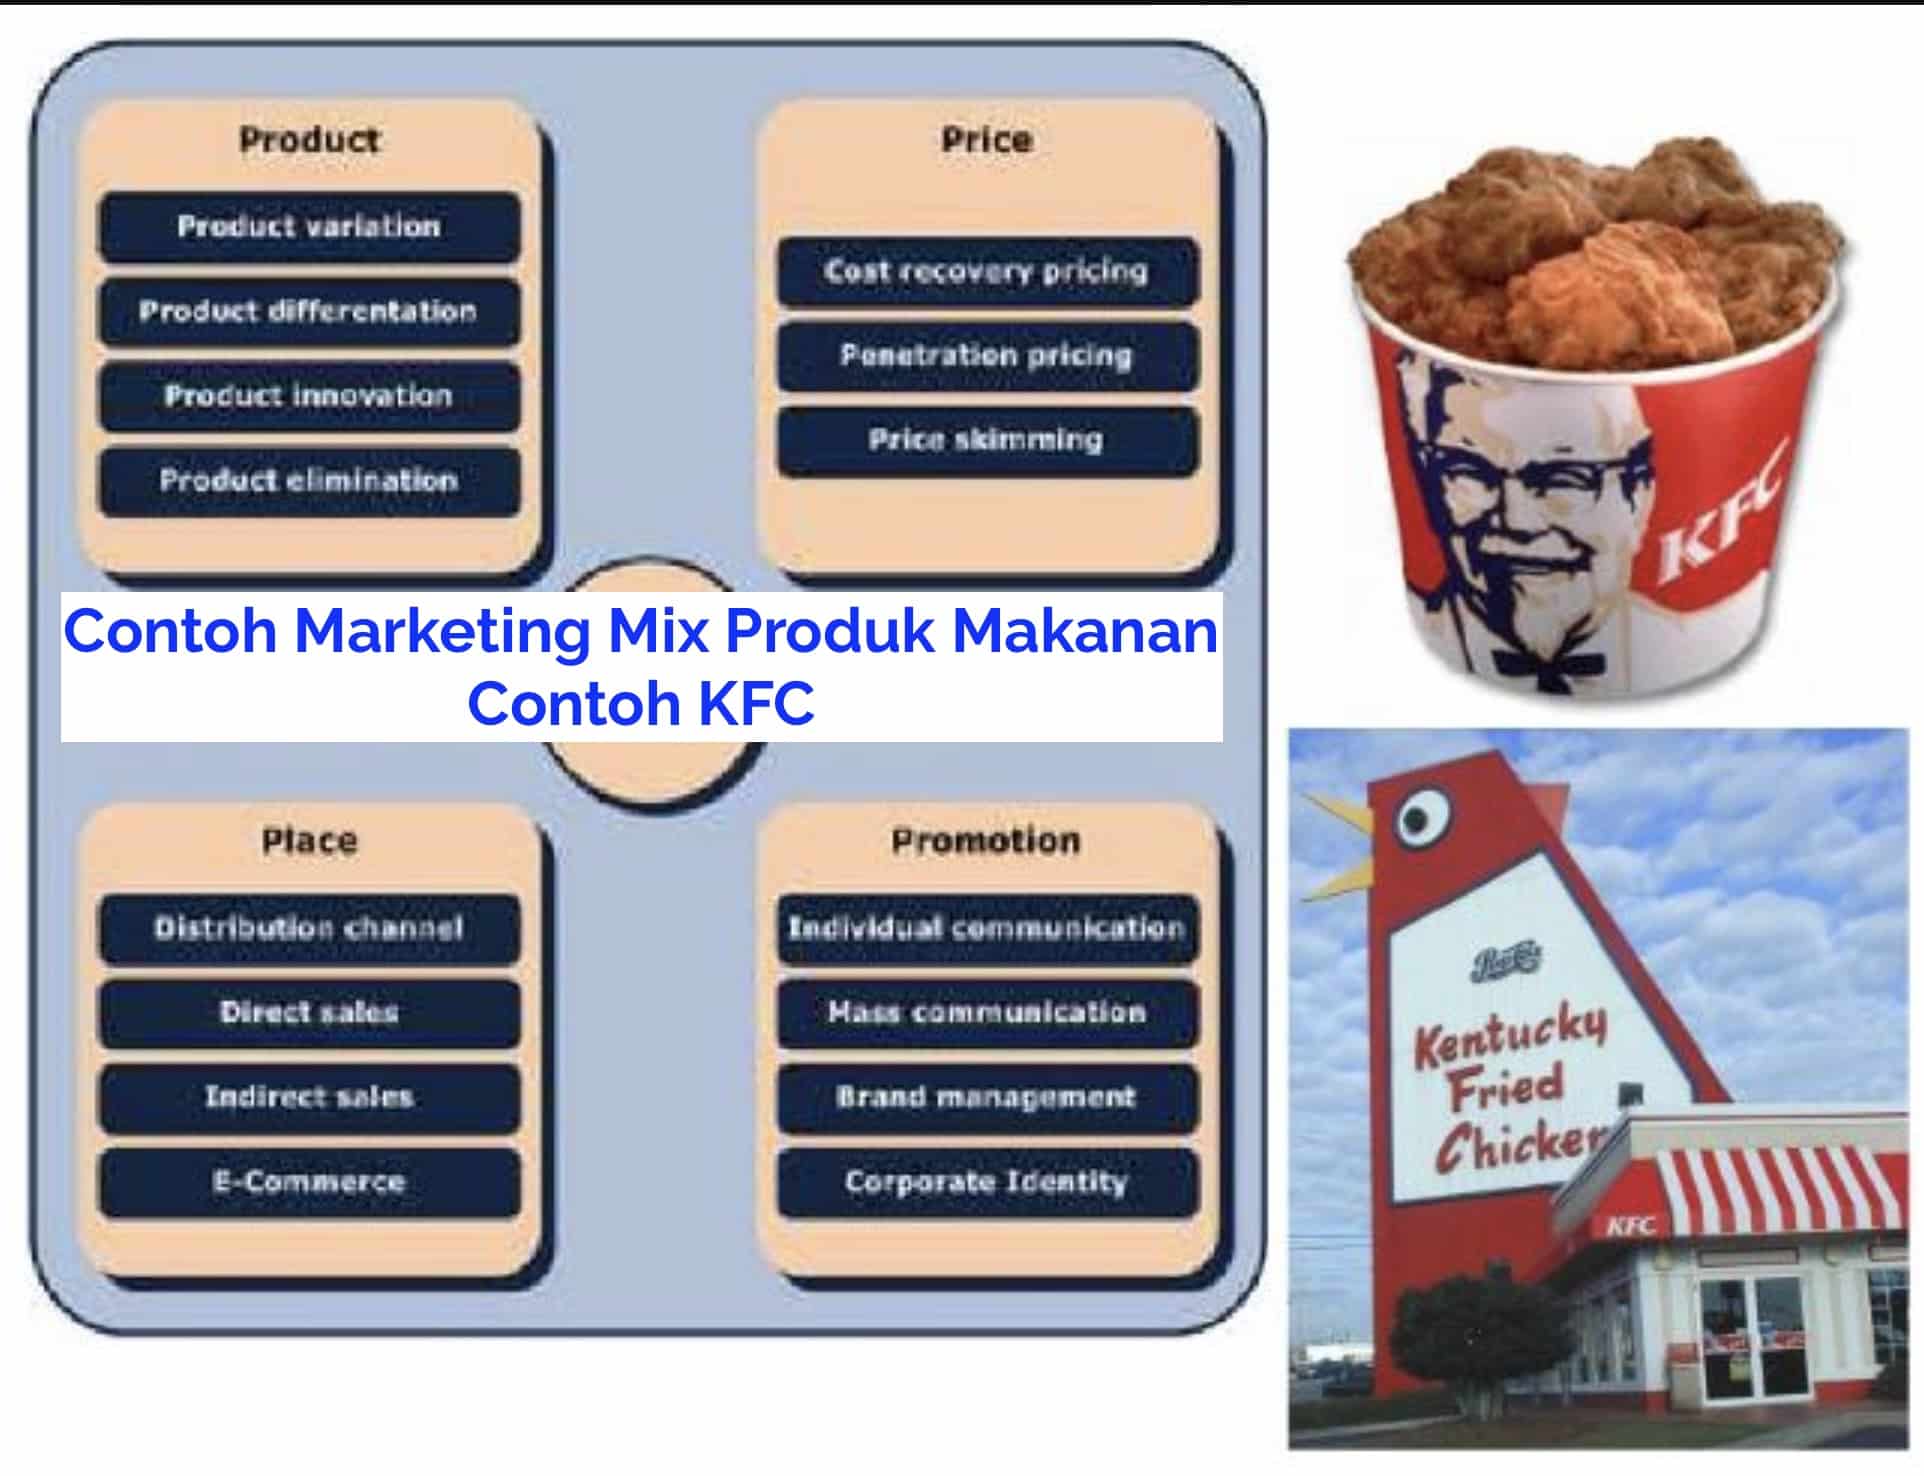 Marketing Mix Dan Contoh Marketing Mix Produk Makanan Vrogue Co